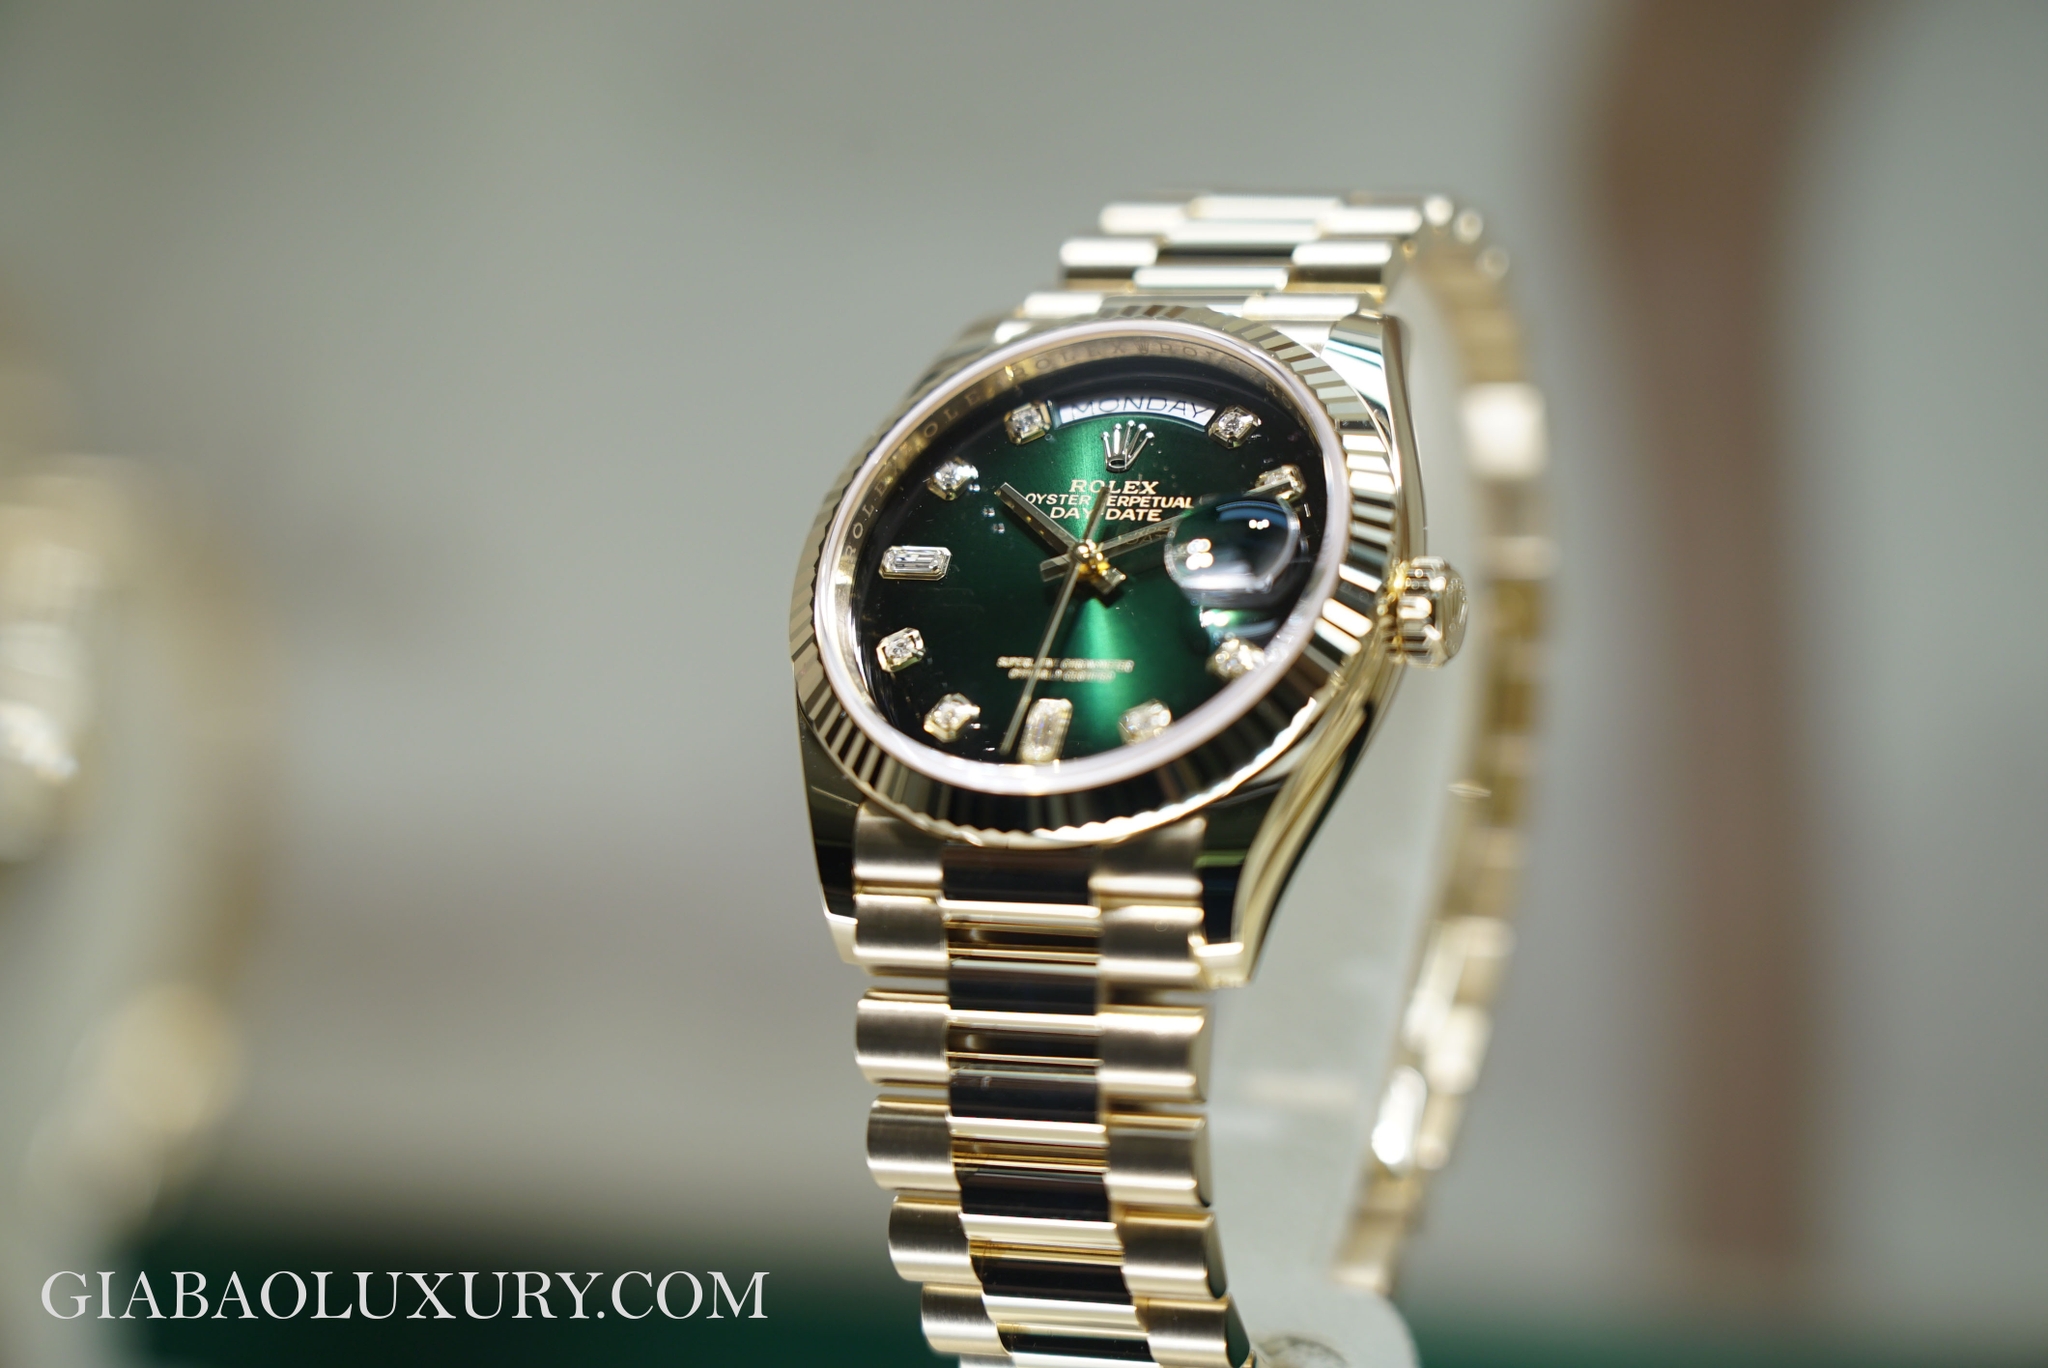 Rolex giới thiệu mẫu Day-Date 36 mới với mặt số xanh lá chuyển sắc